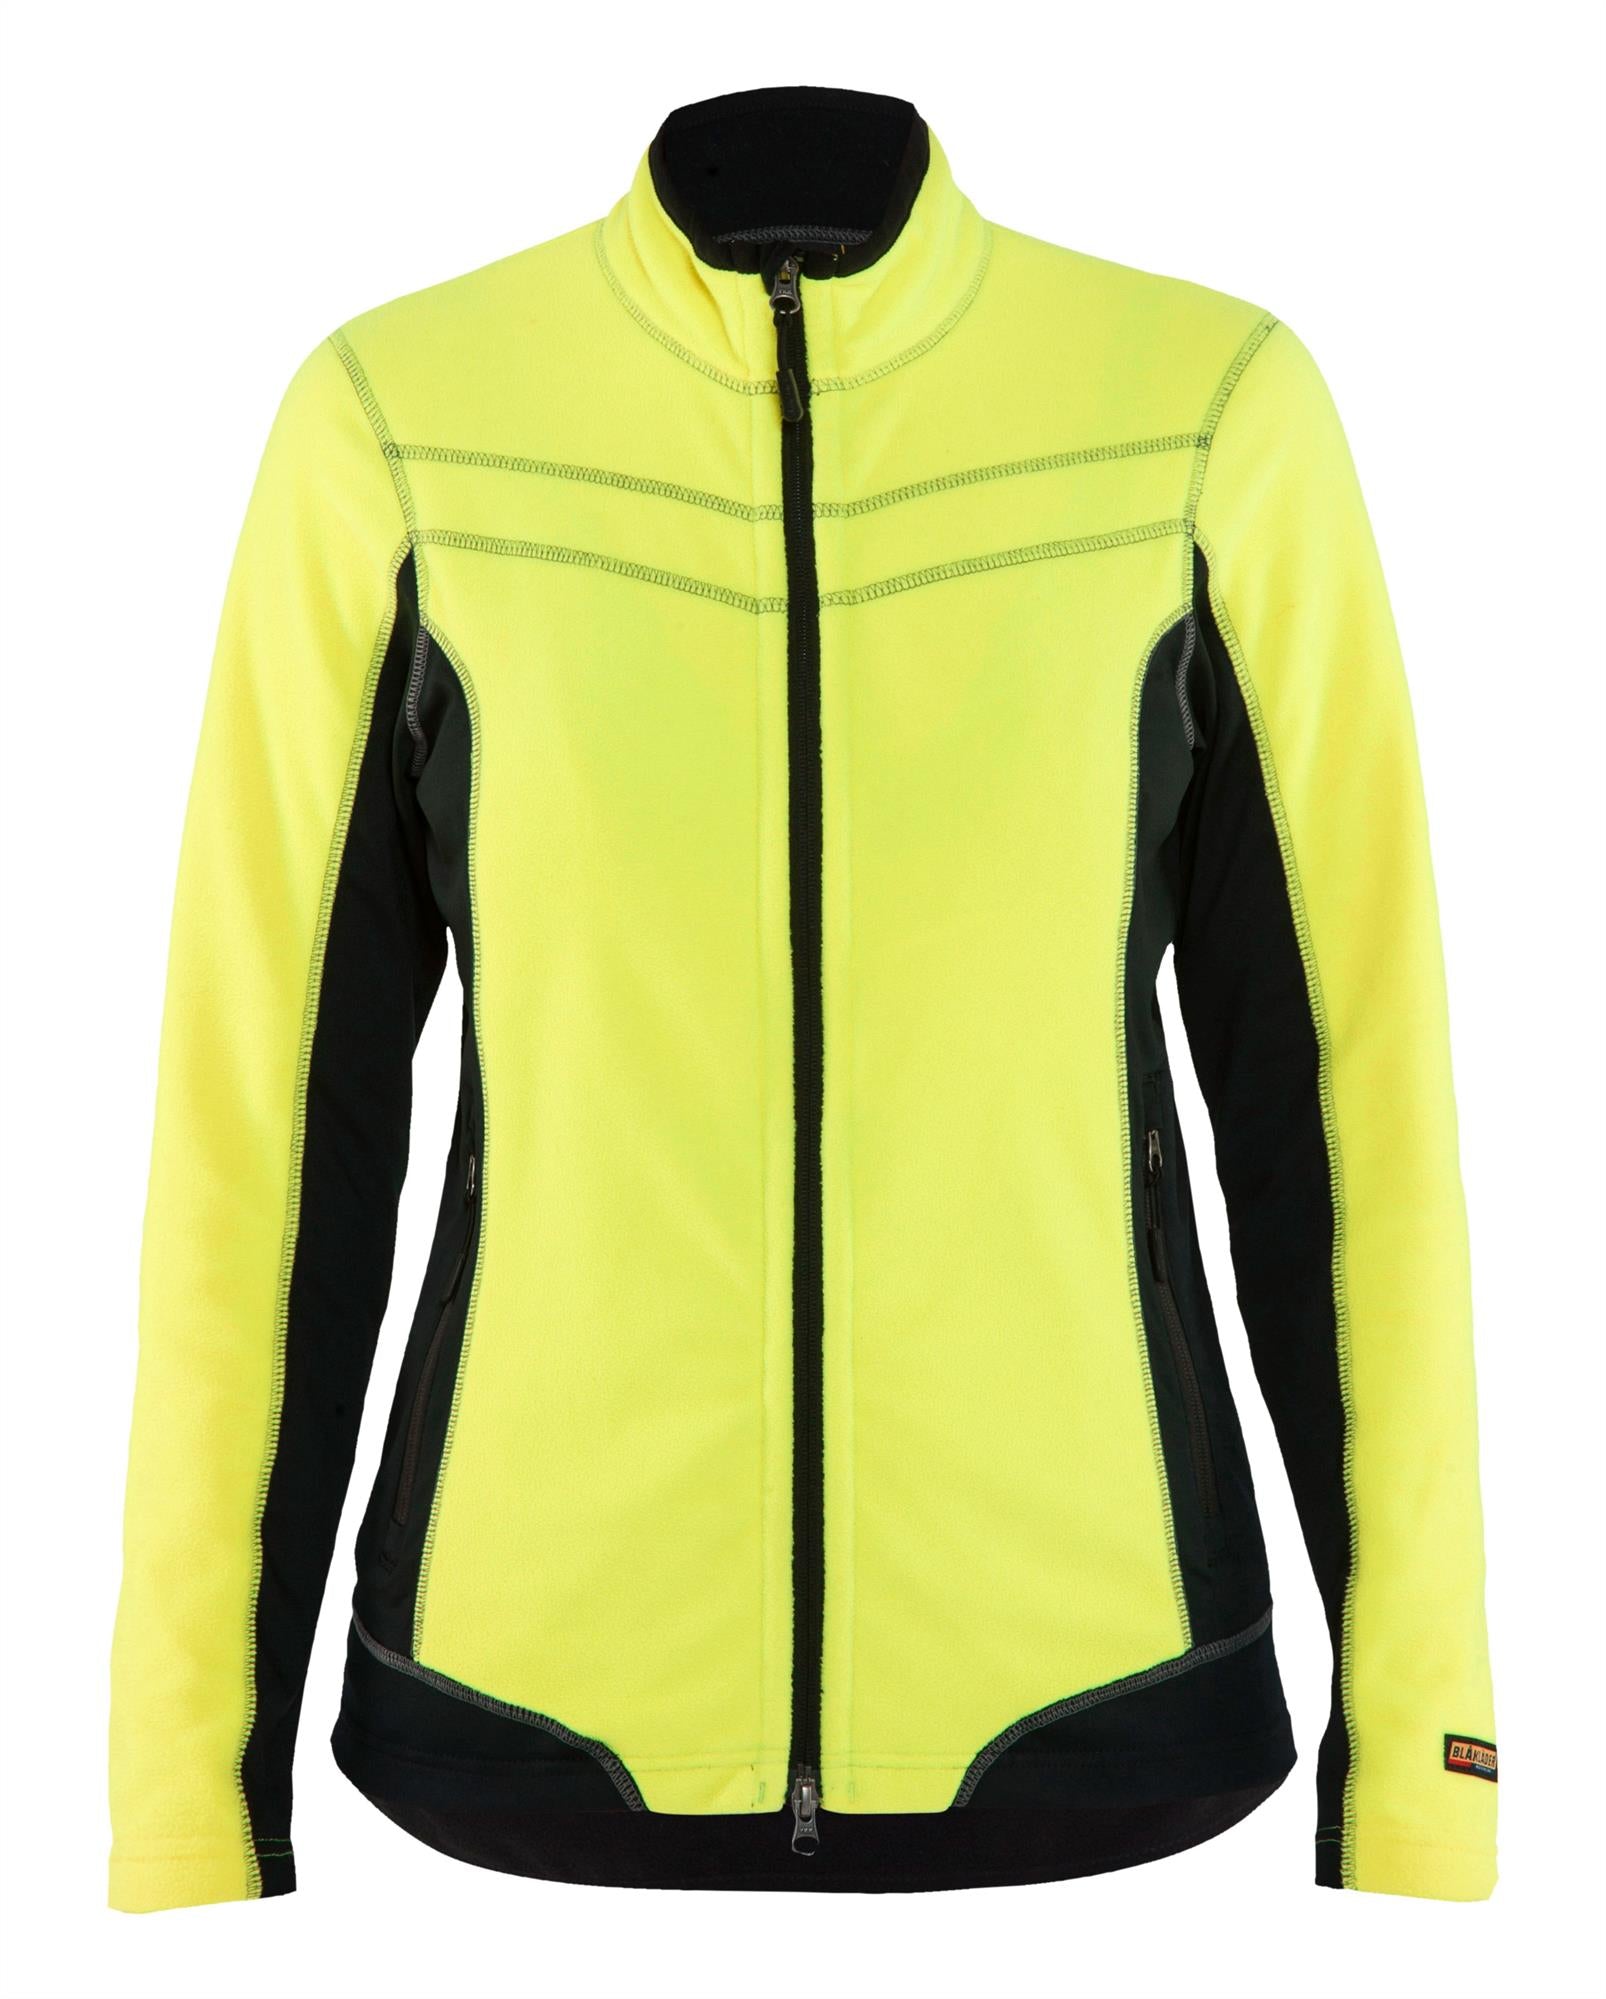 Blaklader yellow/black women's full-zip microfleece jacket #4924